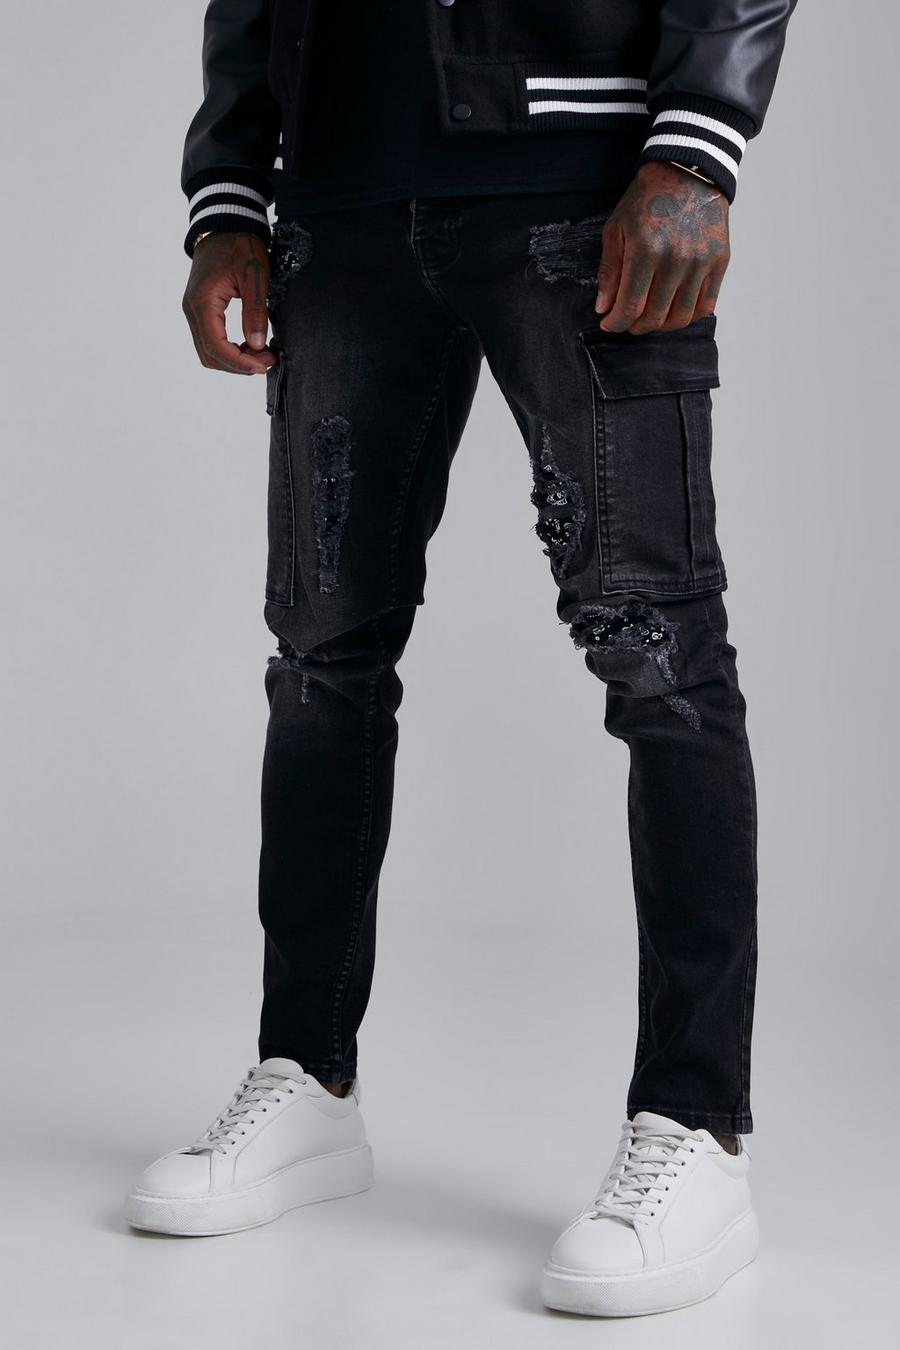 שחור דהוי סקיני ג'ינס דגמ'ח נמתח עם קרעים וטלאים